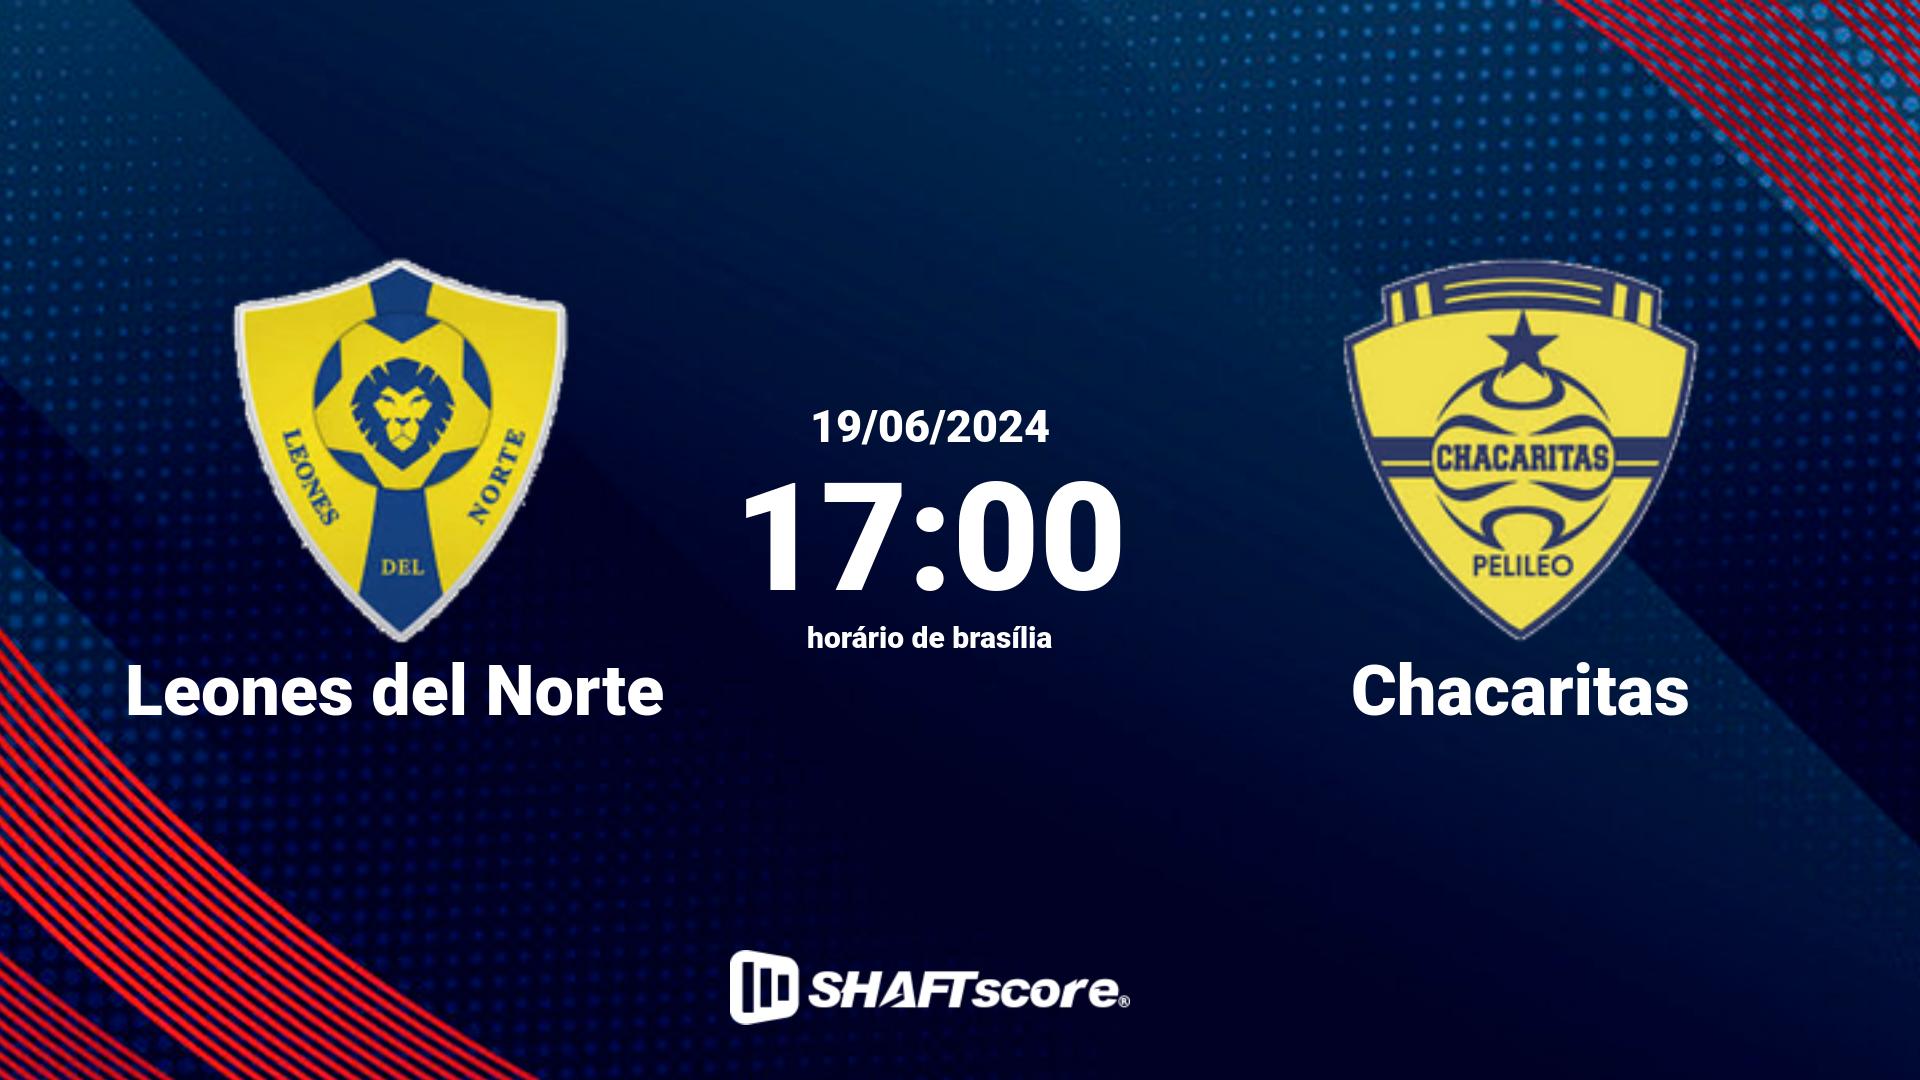 Estatísticas do jogo Leones del Norte vs Chacaritas 19.06 17:00